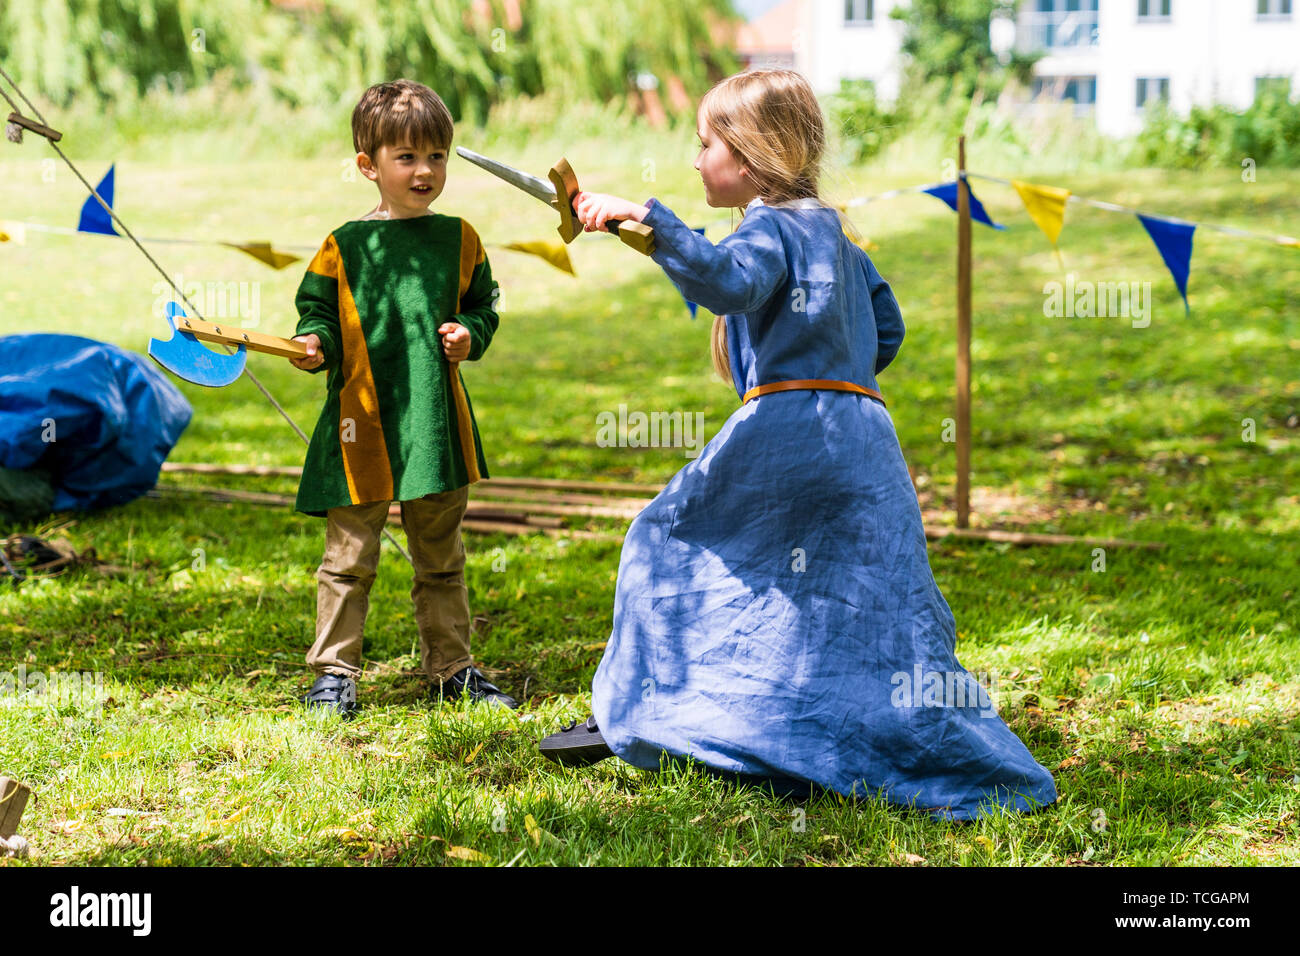 Le week-end médiéval. Portrait de deux jeunes enfants, garçon, 4-5 ans, et une fille, 5-6 ans, vêtu de vêtements médiévaux et des combats à l'épée et espièglerie ax dans l'herbe avec saule derrière. Banque D'Images